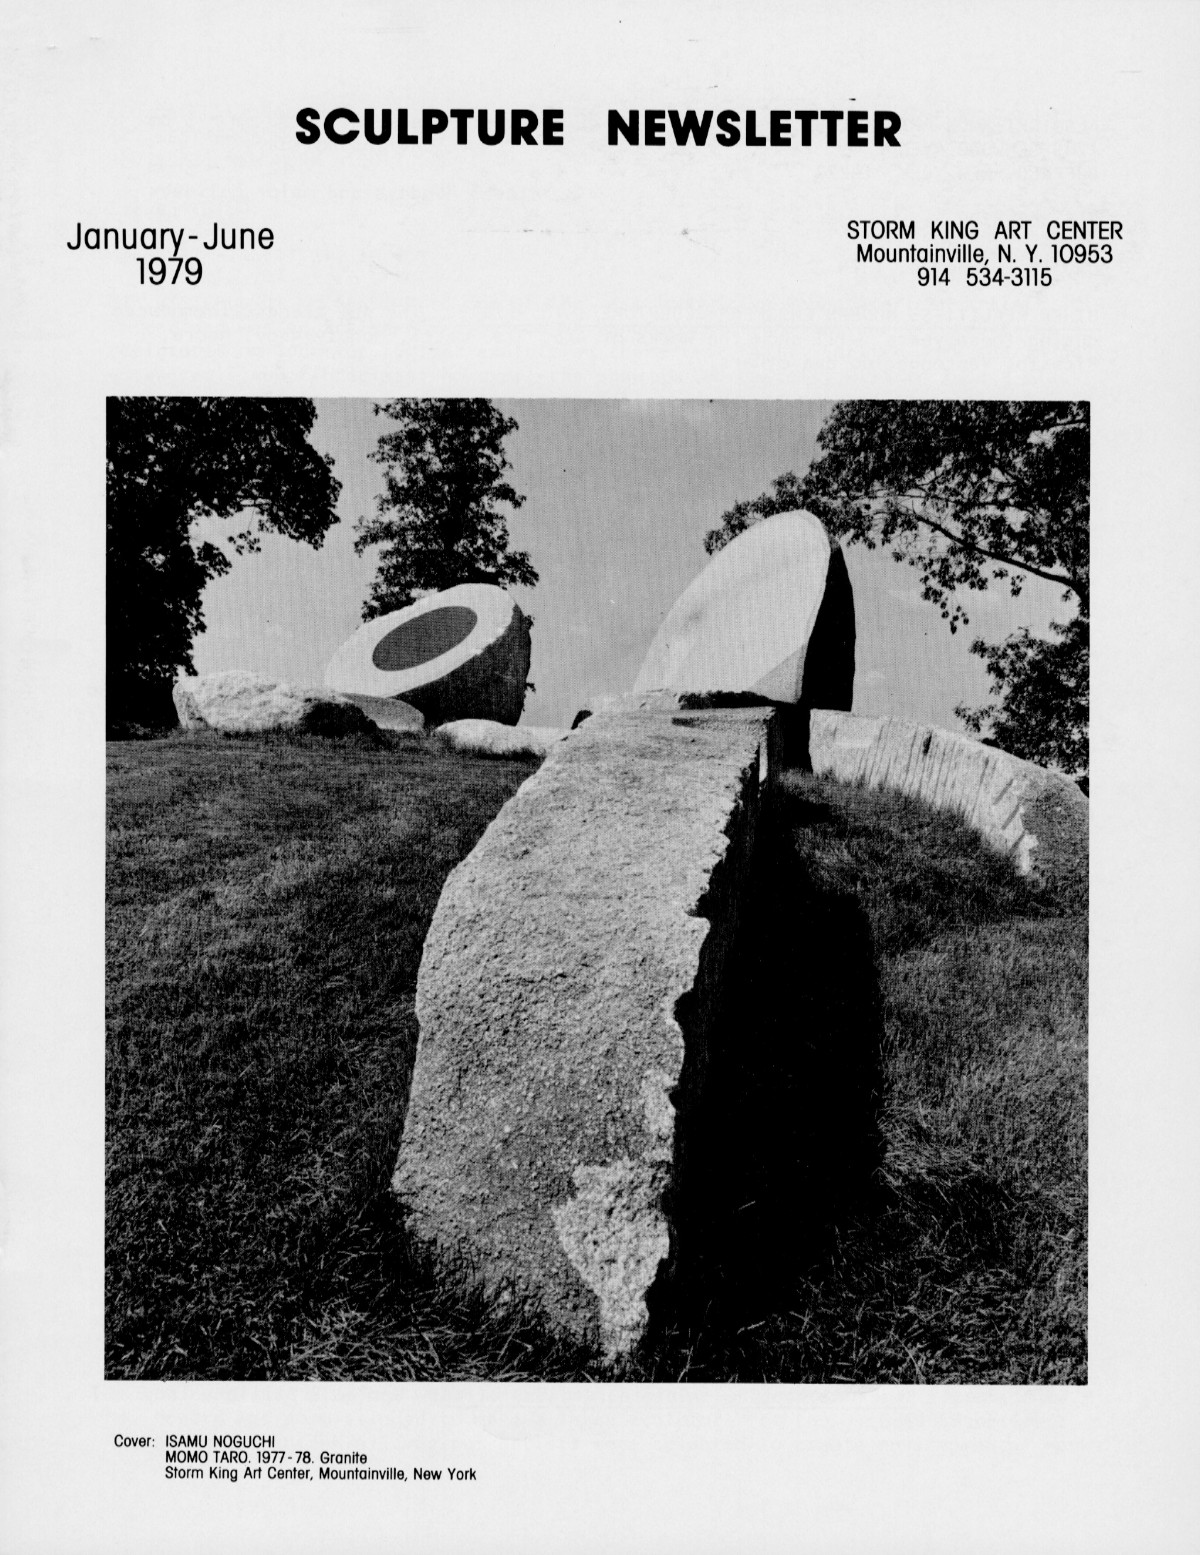 Storm King Art Center Newsletter, January - June 1979